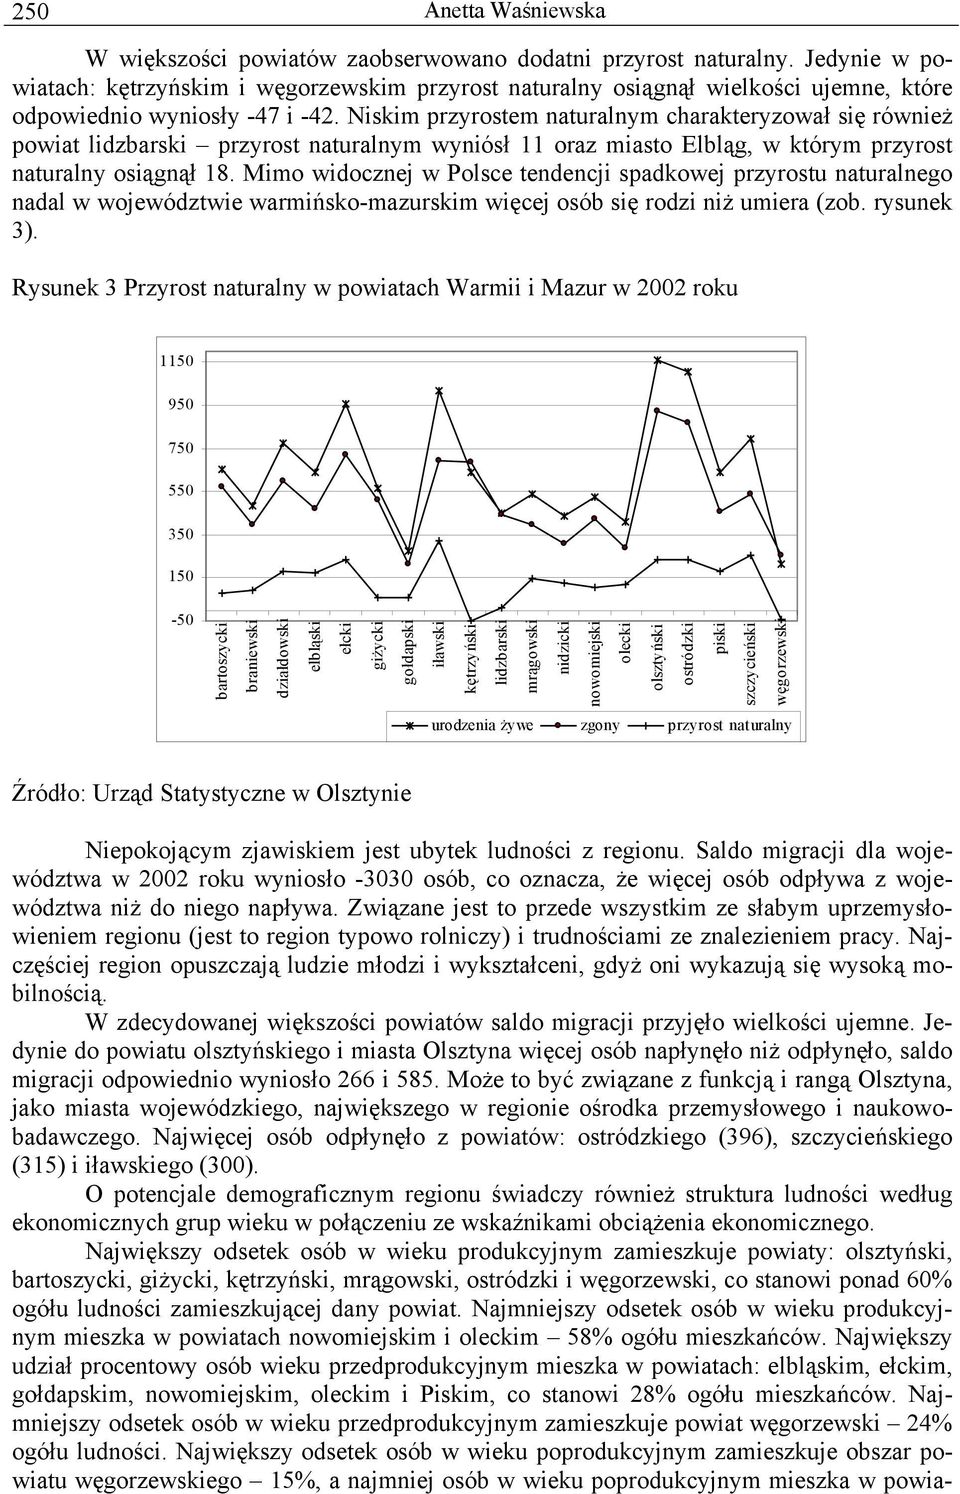 Mimo widocznej w Polsce tendencji spadkowej przyrostu naturalnego nadal w województwie warmińsko-mazurskim więcej osób się rodzi niż umiera (zob. rysunek 3).